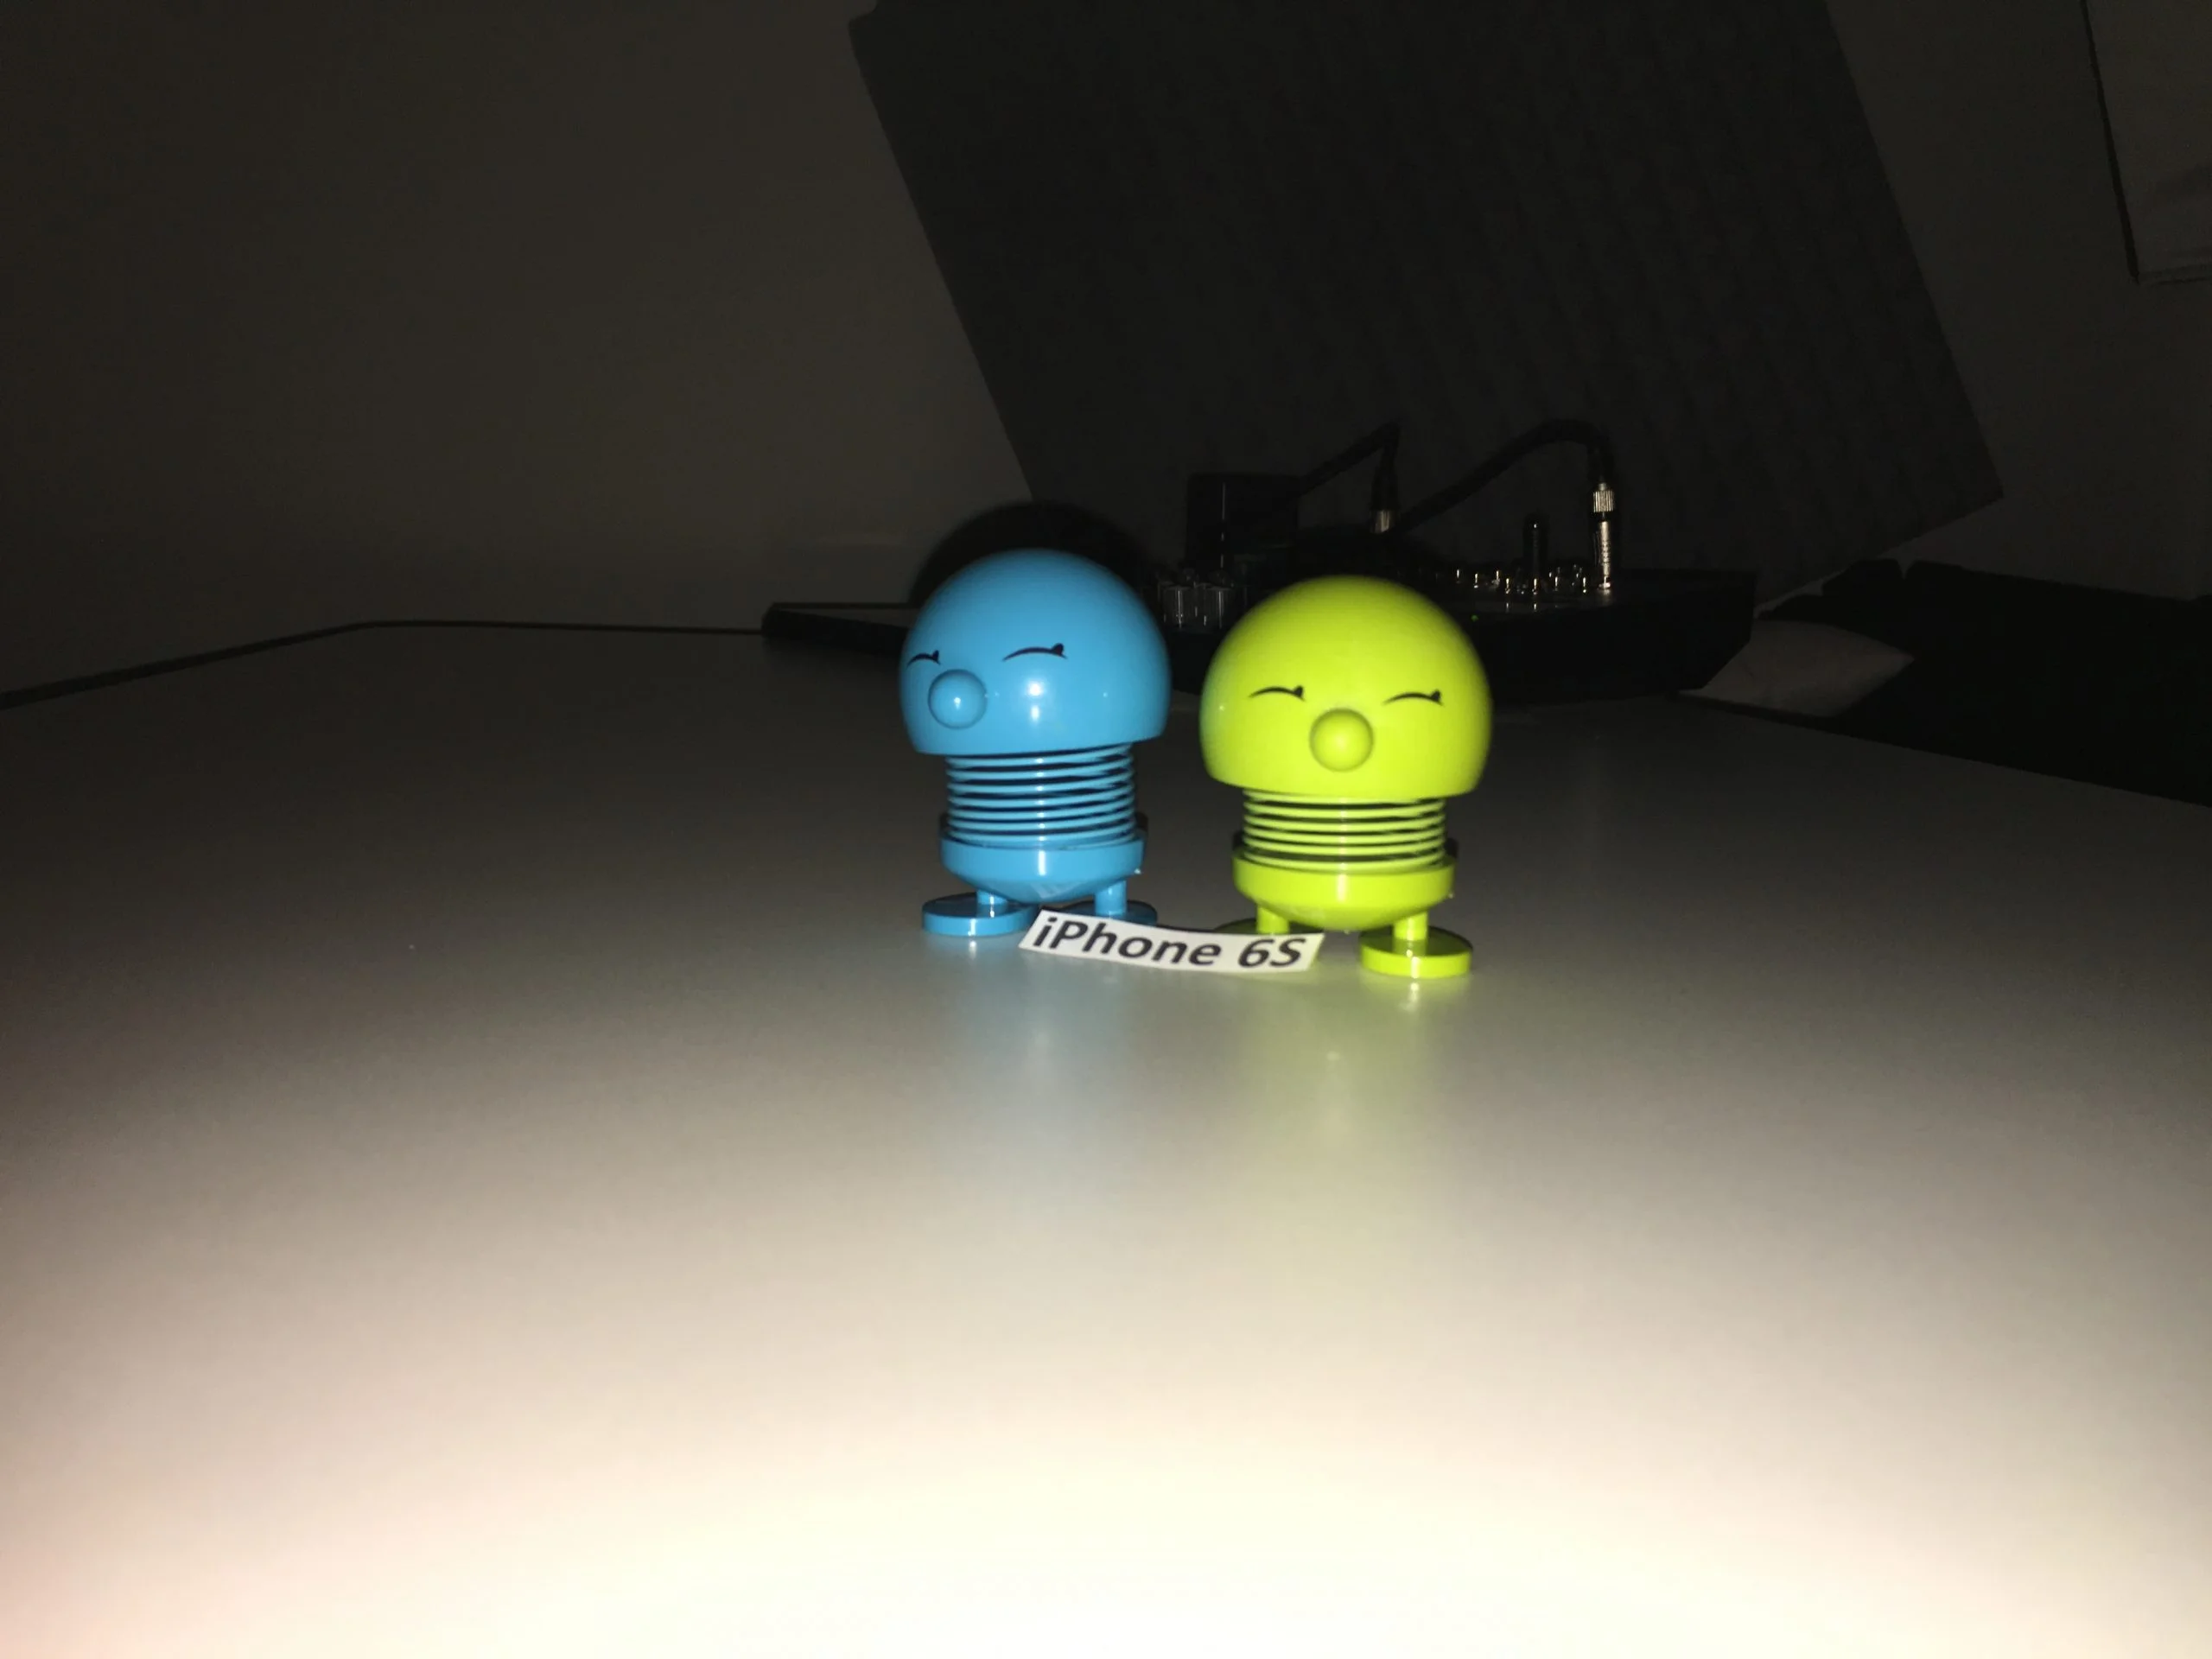 Foto taget med iPhone 6S i et mørkt rum med fotolys